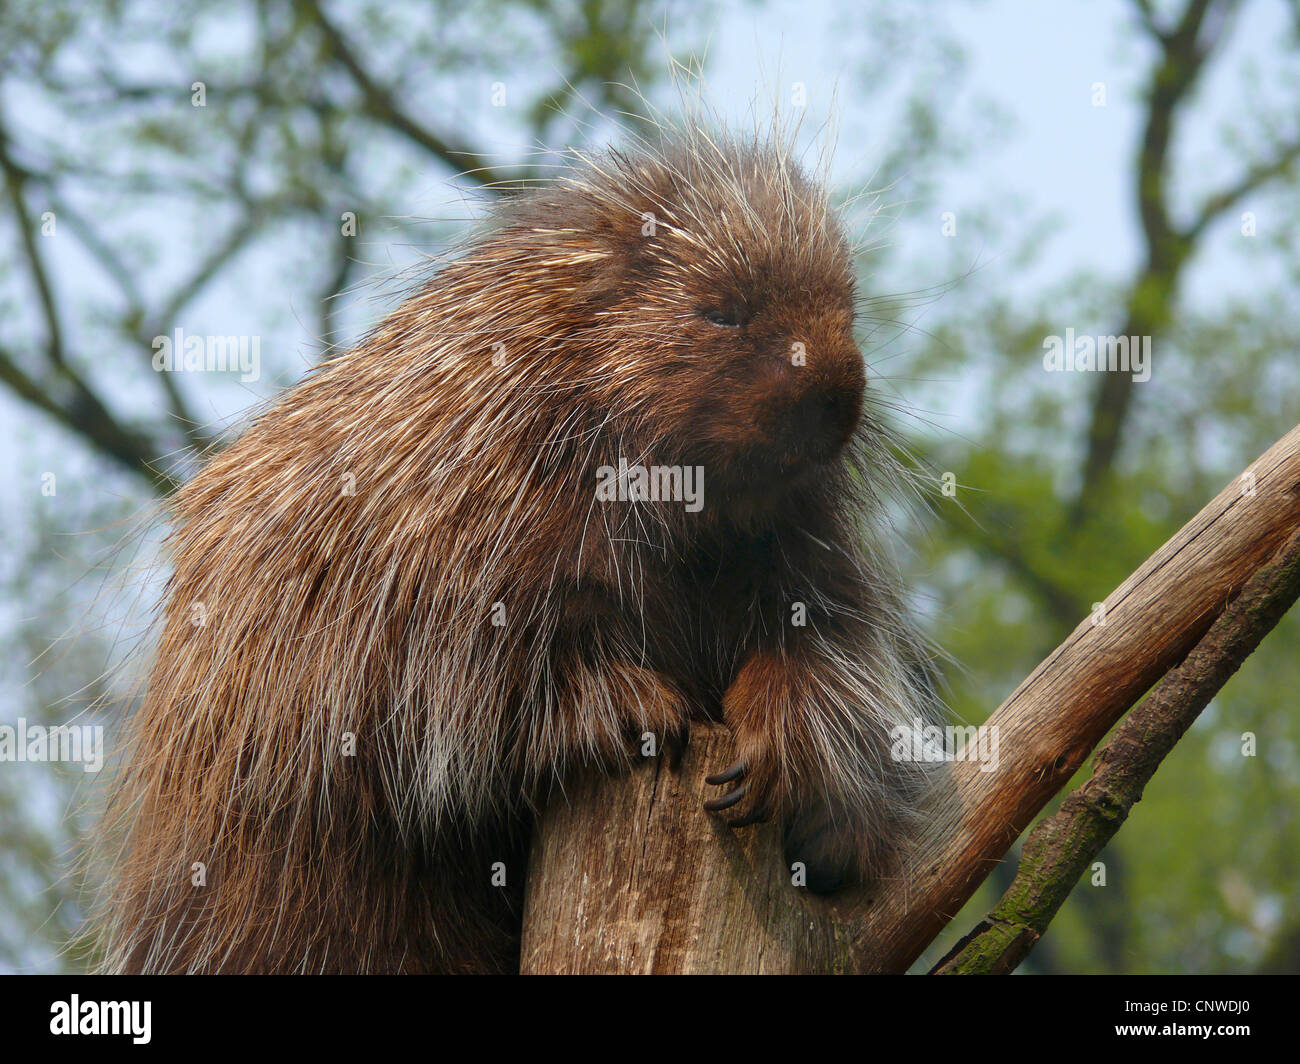 North American porcupine (Erethizon dorsatum), seduti in una struttura ad albero Foto Stock